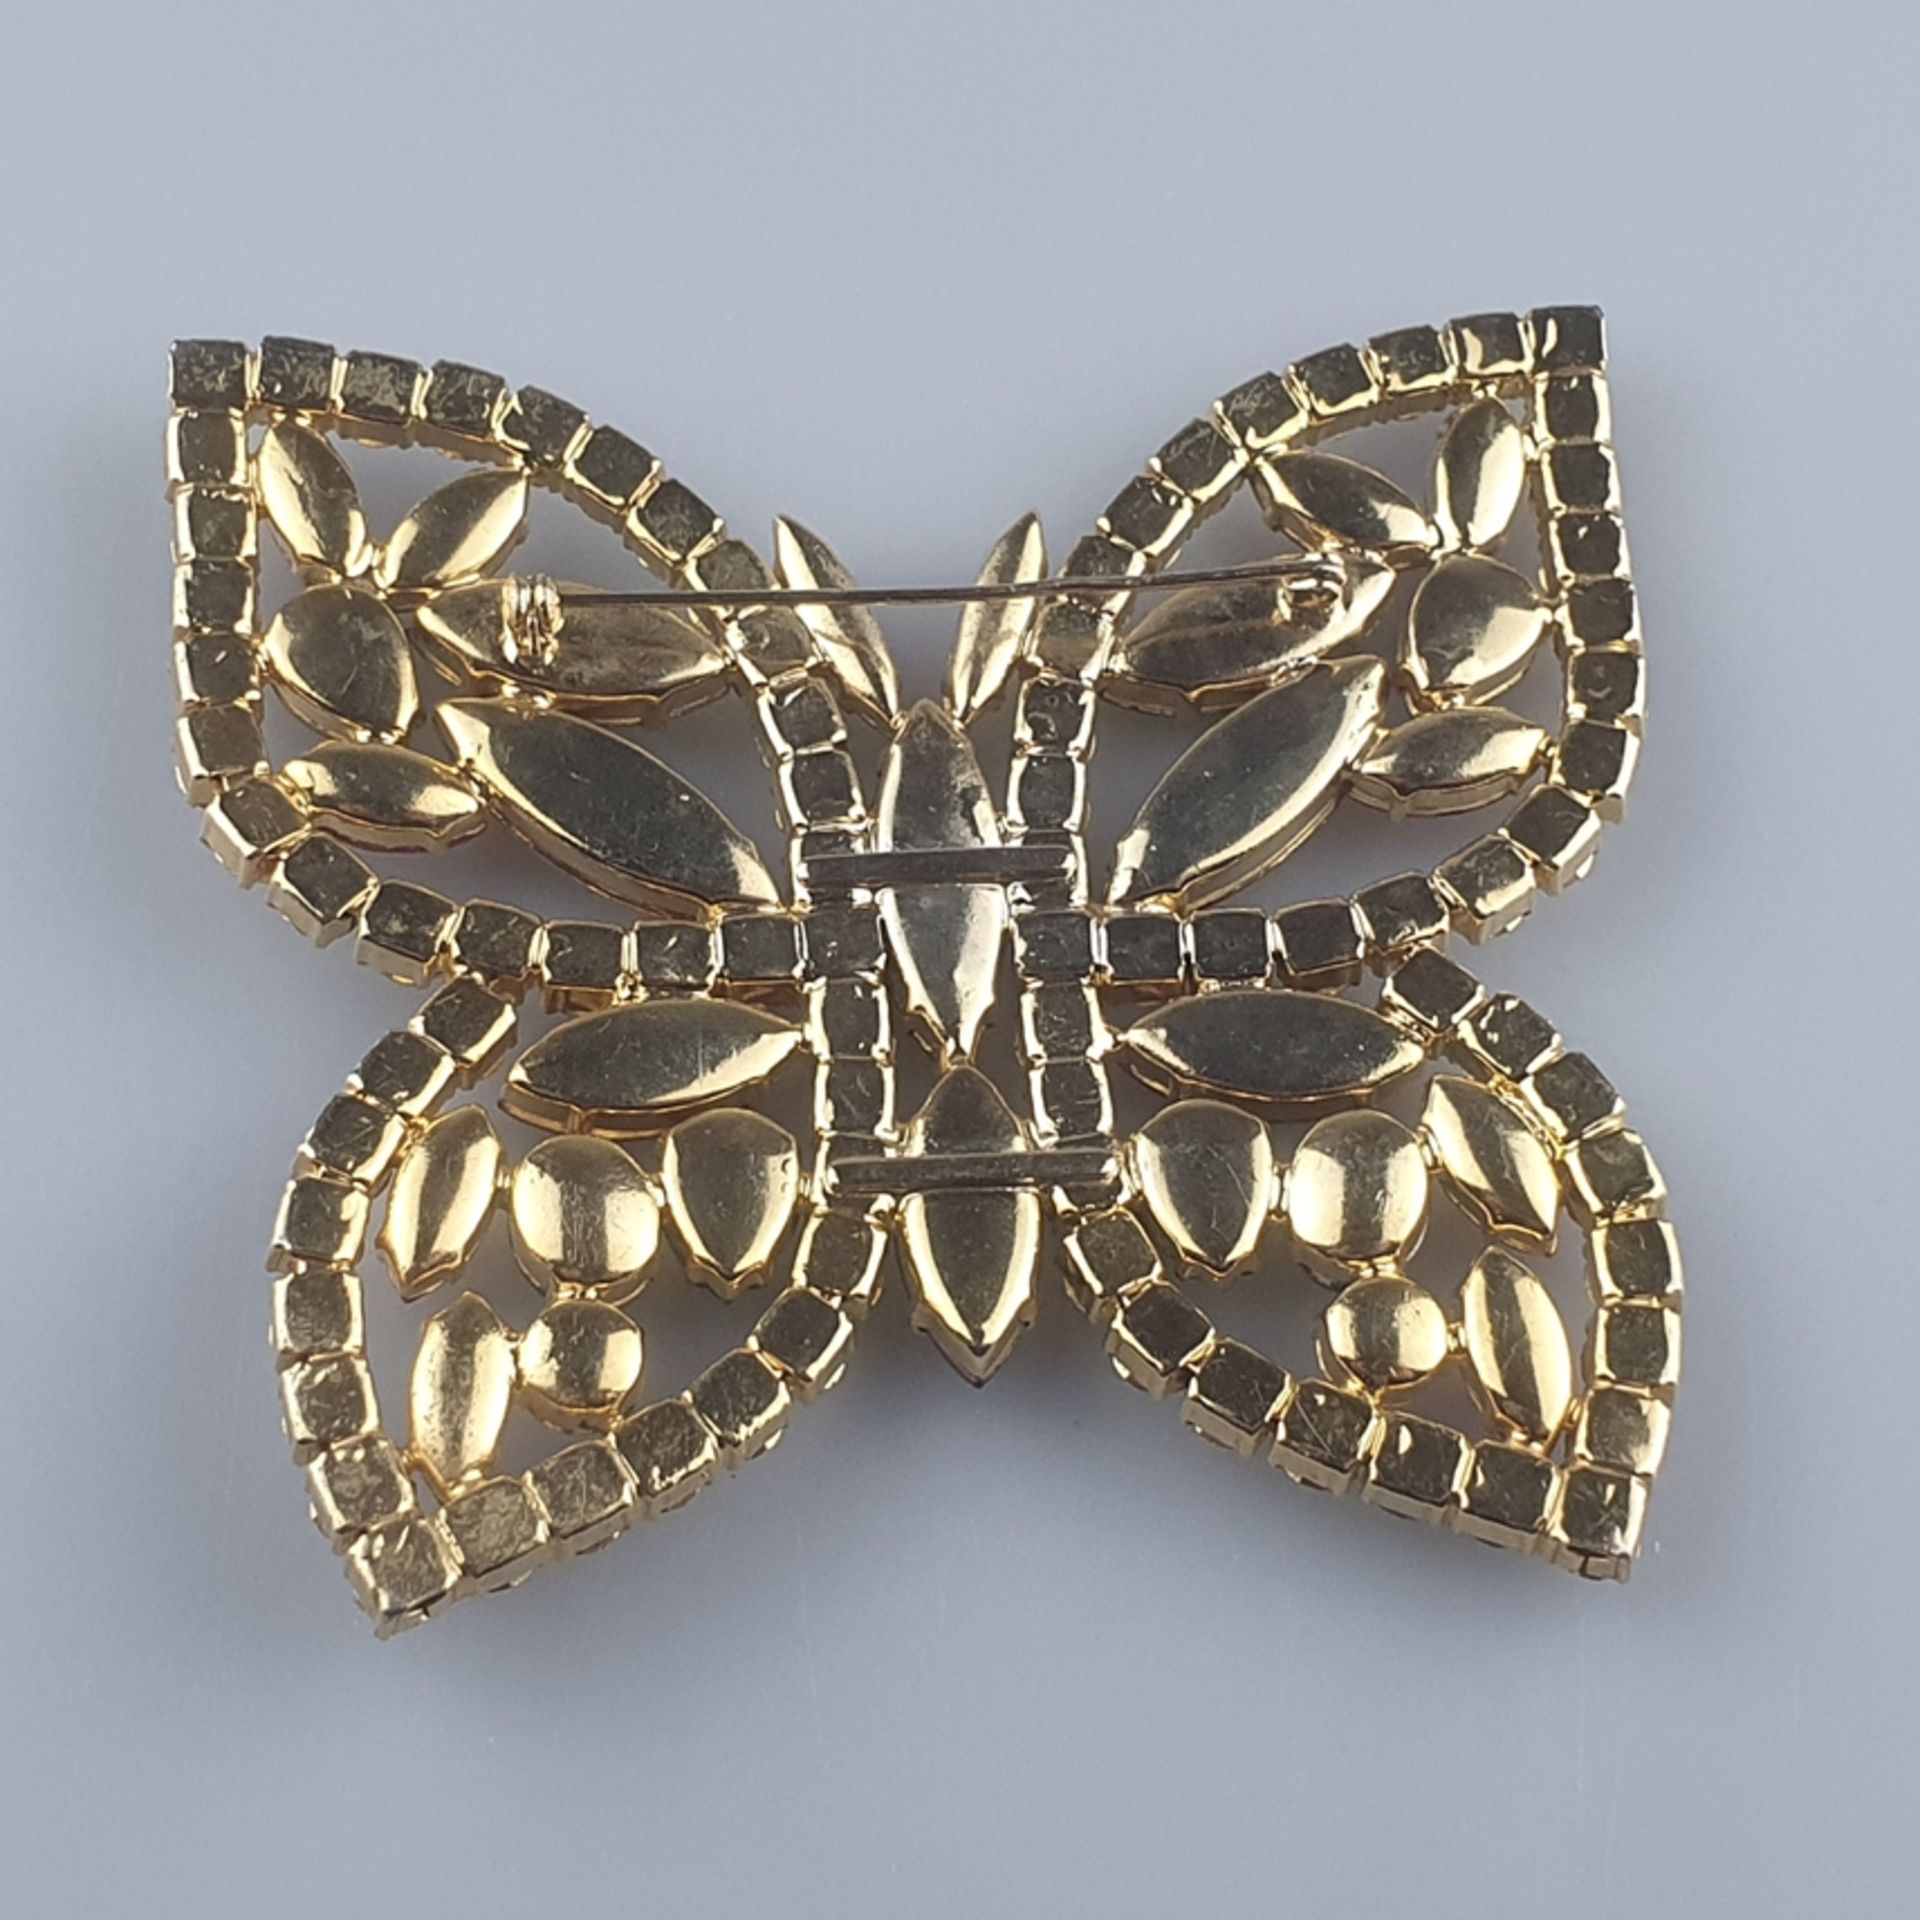 Sehr große Vintage-Brosche - USA, Metall goldfarben, Schmetterling, durchbrochen gearbeitet, besetz - Image 6 of 6